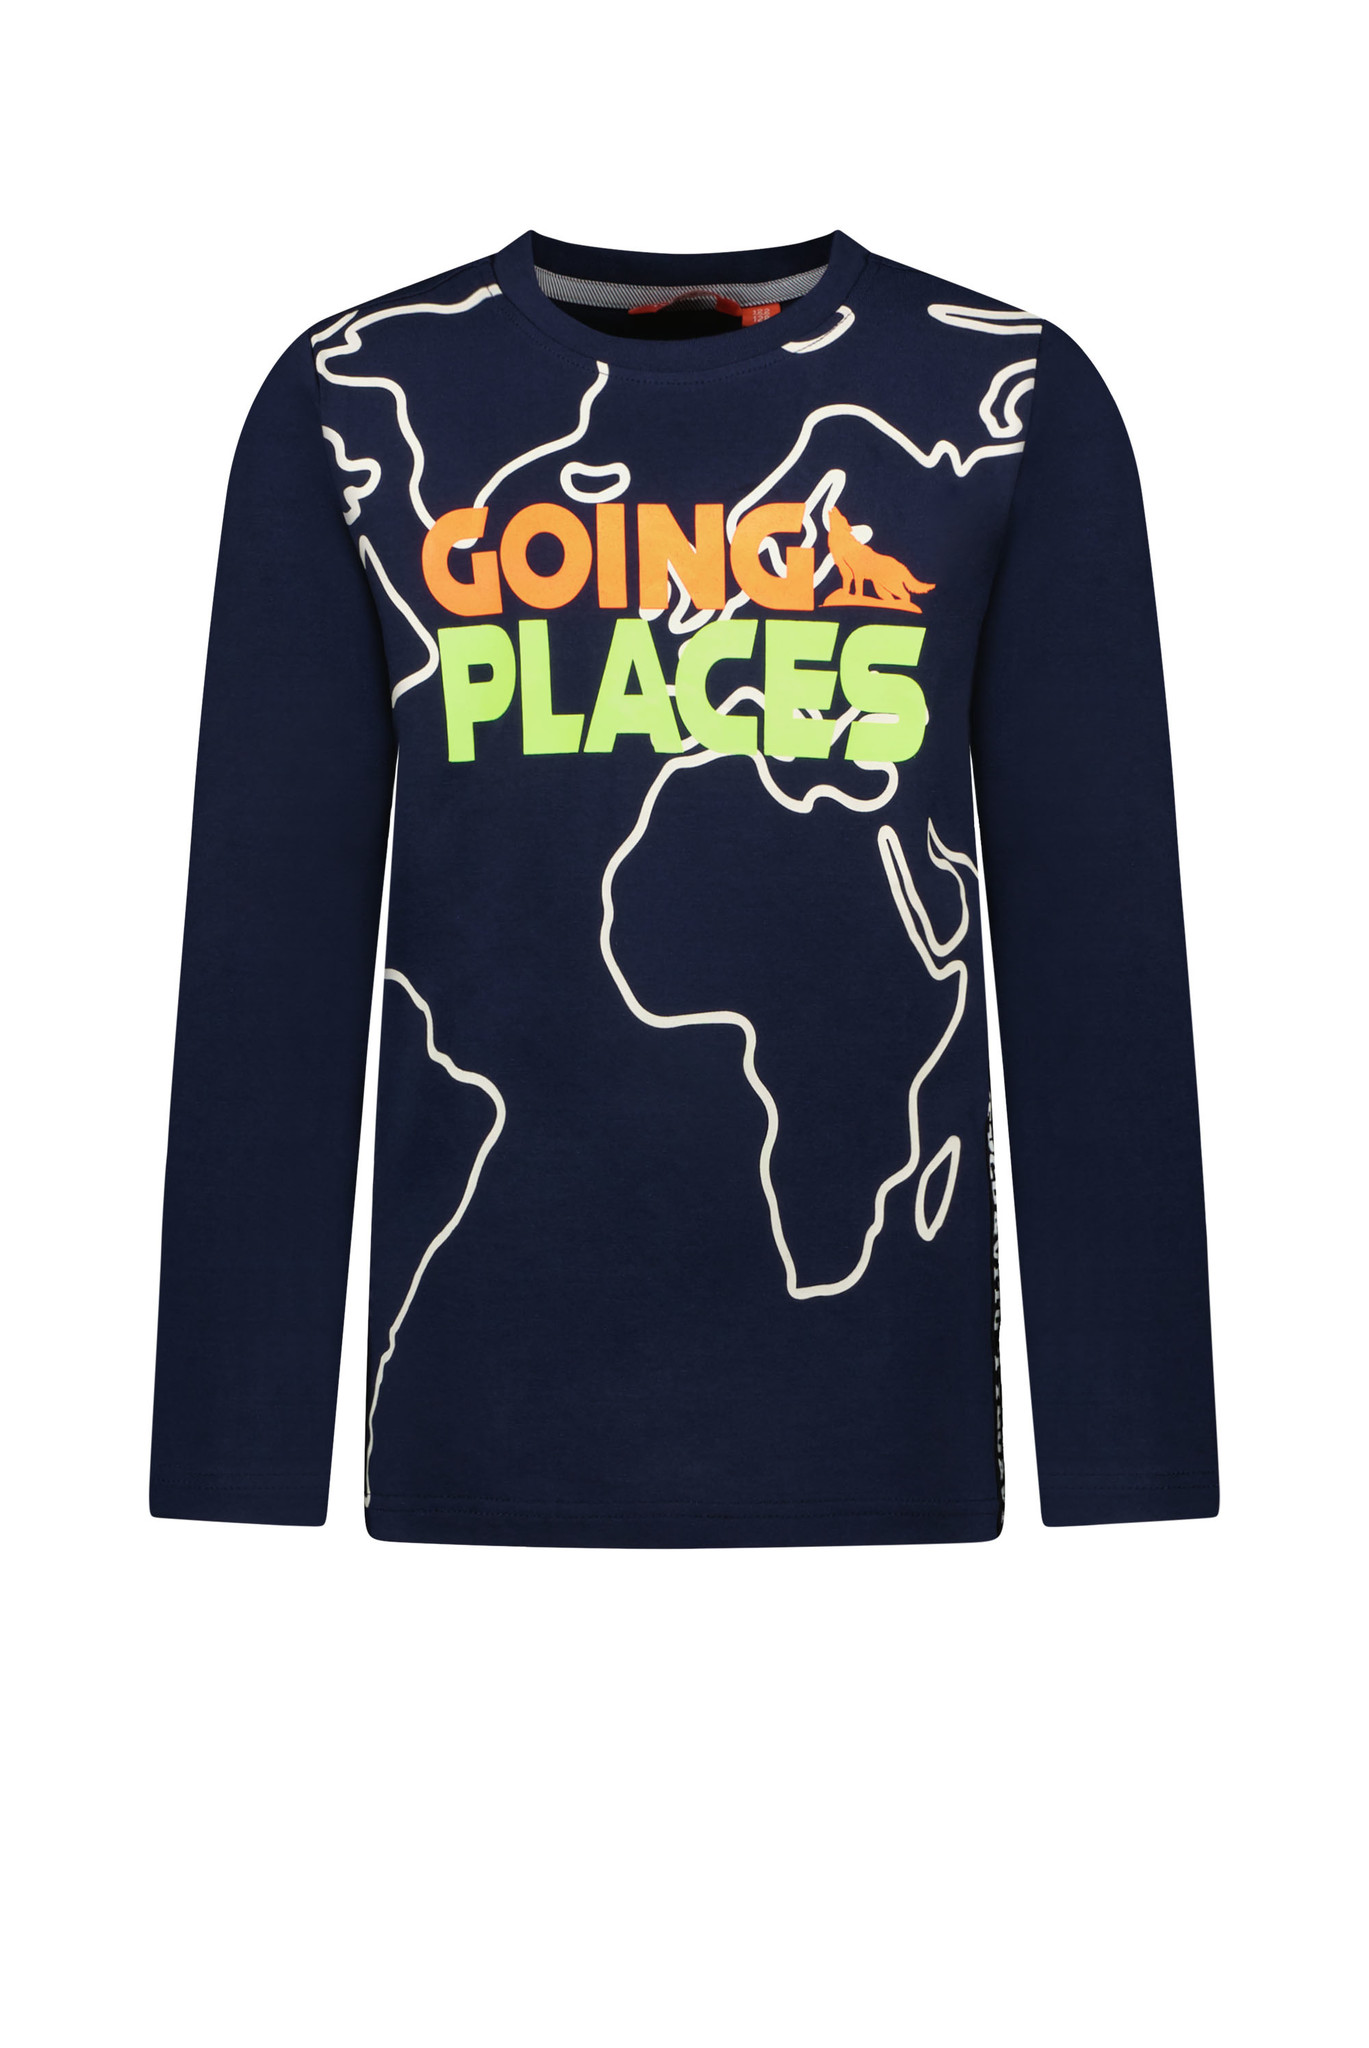 Tygo & Vito Jongens shirt 'Going places' - Navy blauw